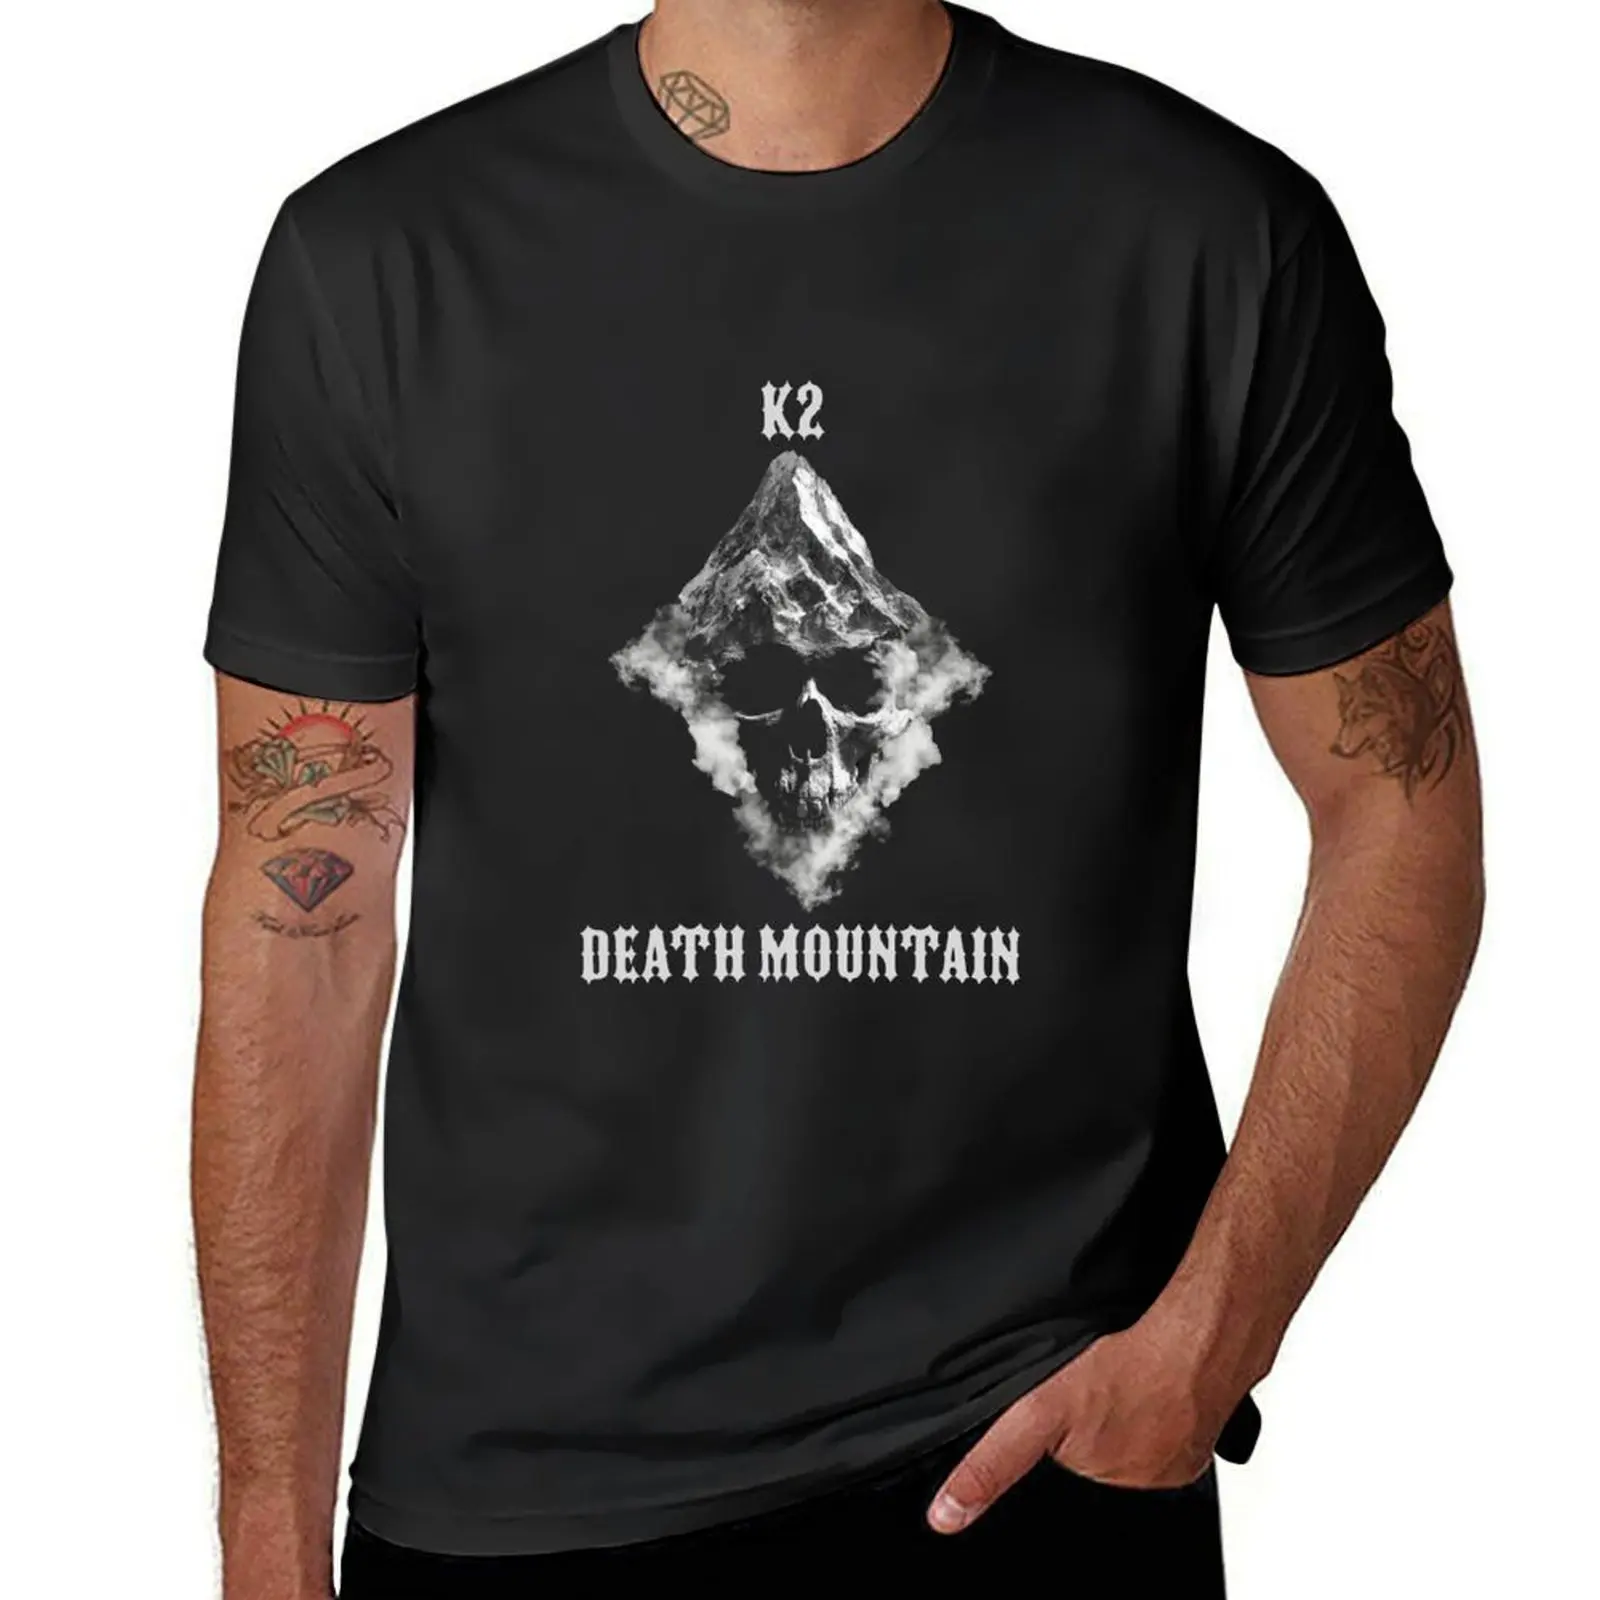 K2 Death Moutain t-shirt abbigliamento estivo top estivi customizeds plain black t-shirt uomo